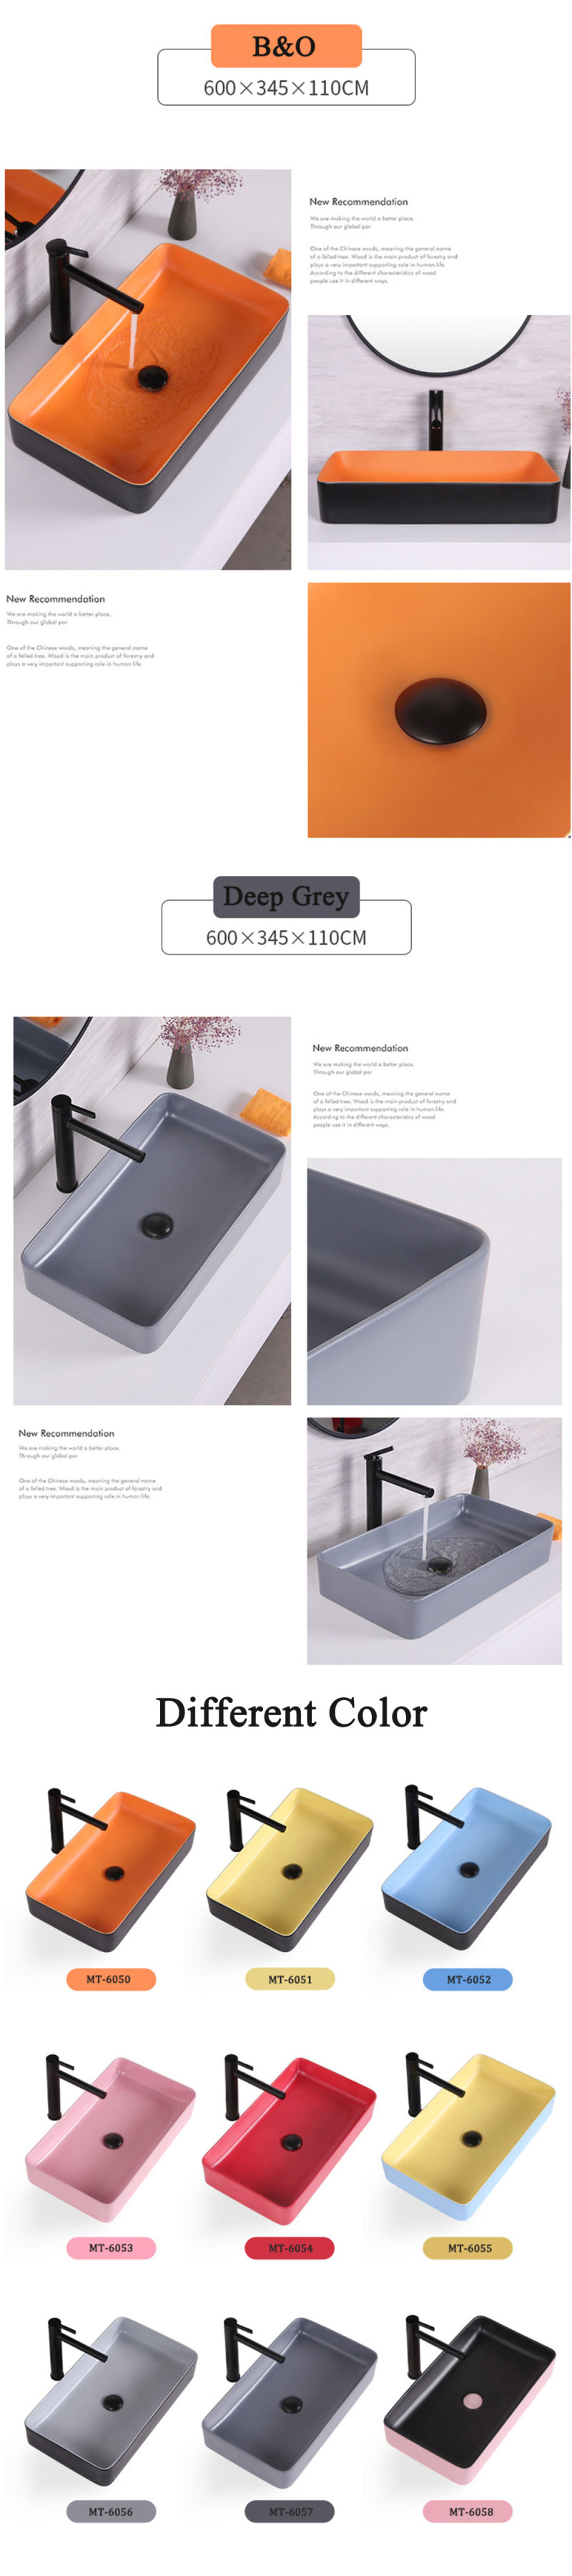 2020 New Design Bathroom Cabinet Ceramic Basin